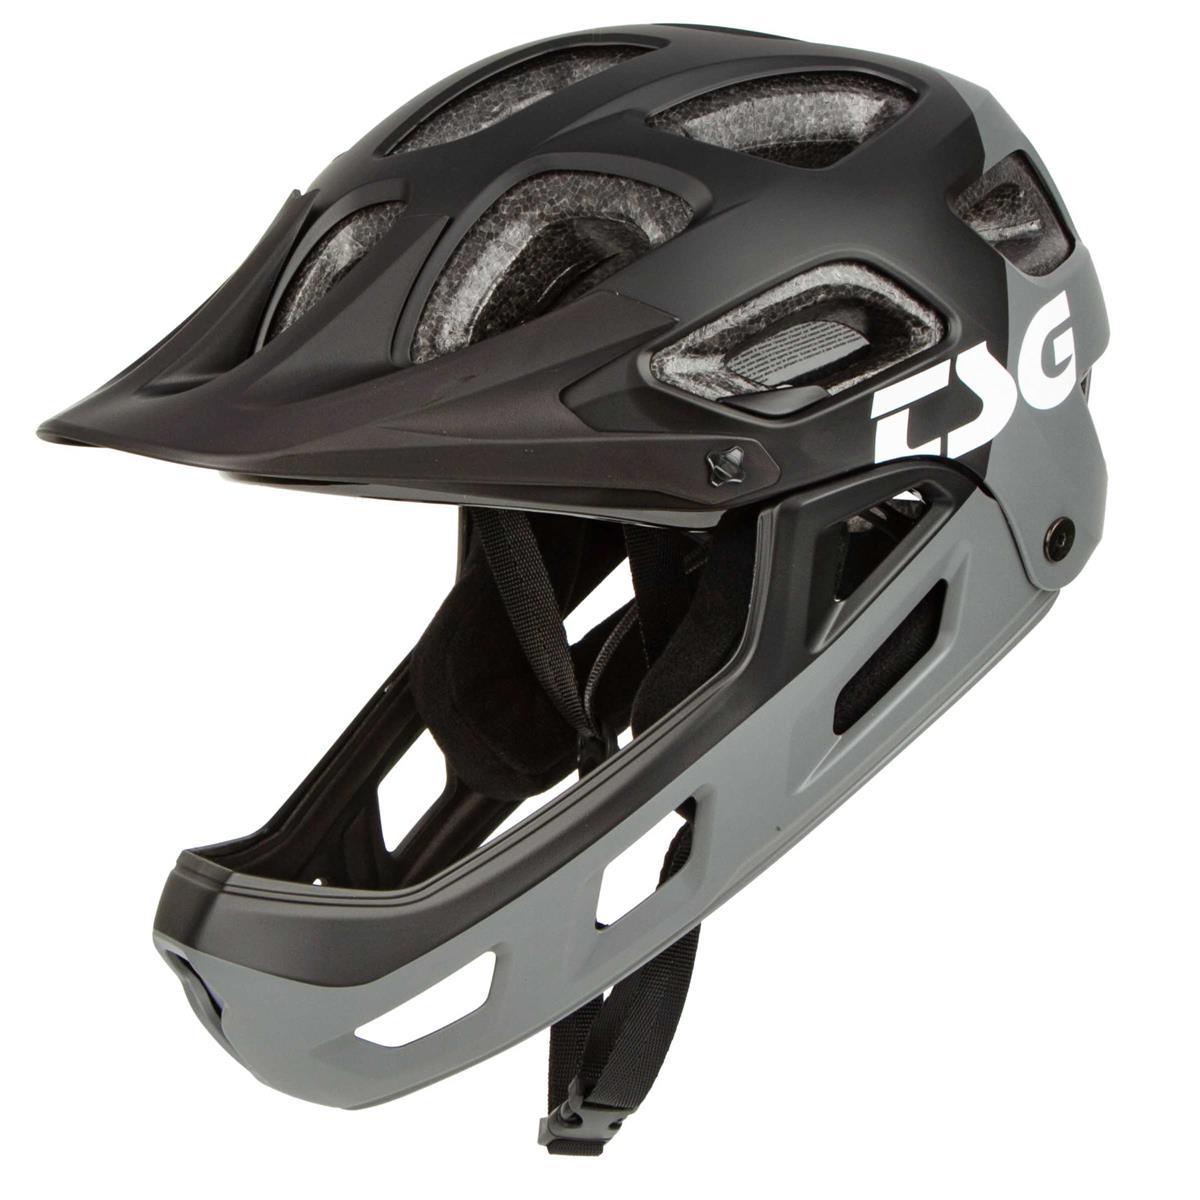 TSG Enduro MTB Helmet Seek FR Graphic Design - Flow Gray/Black